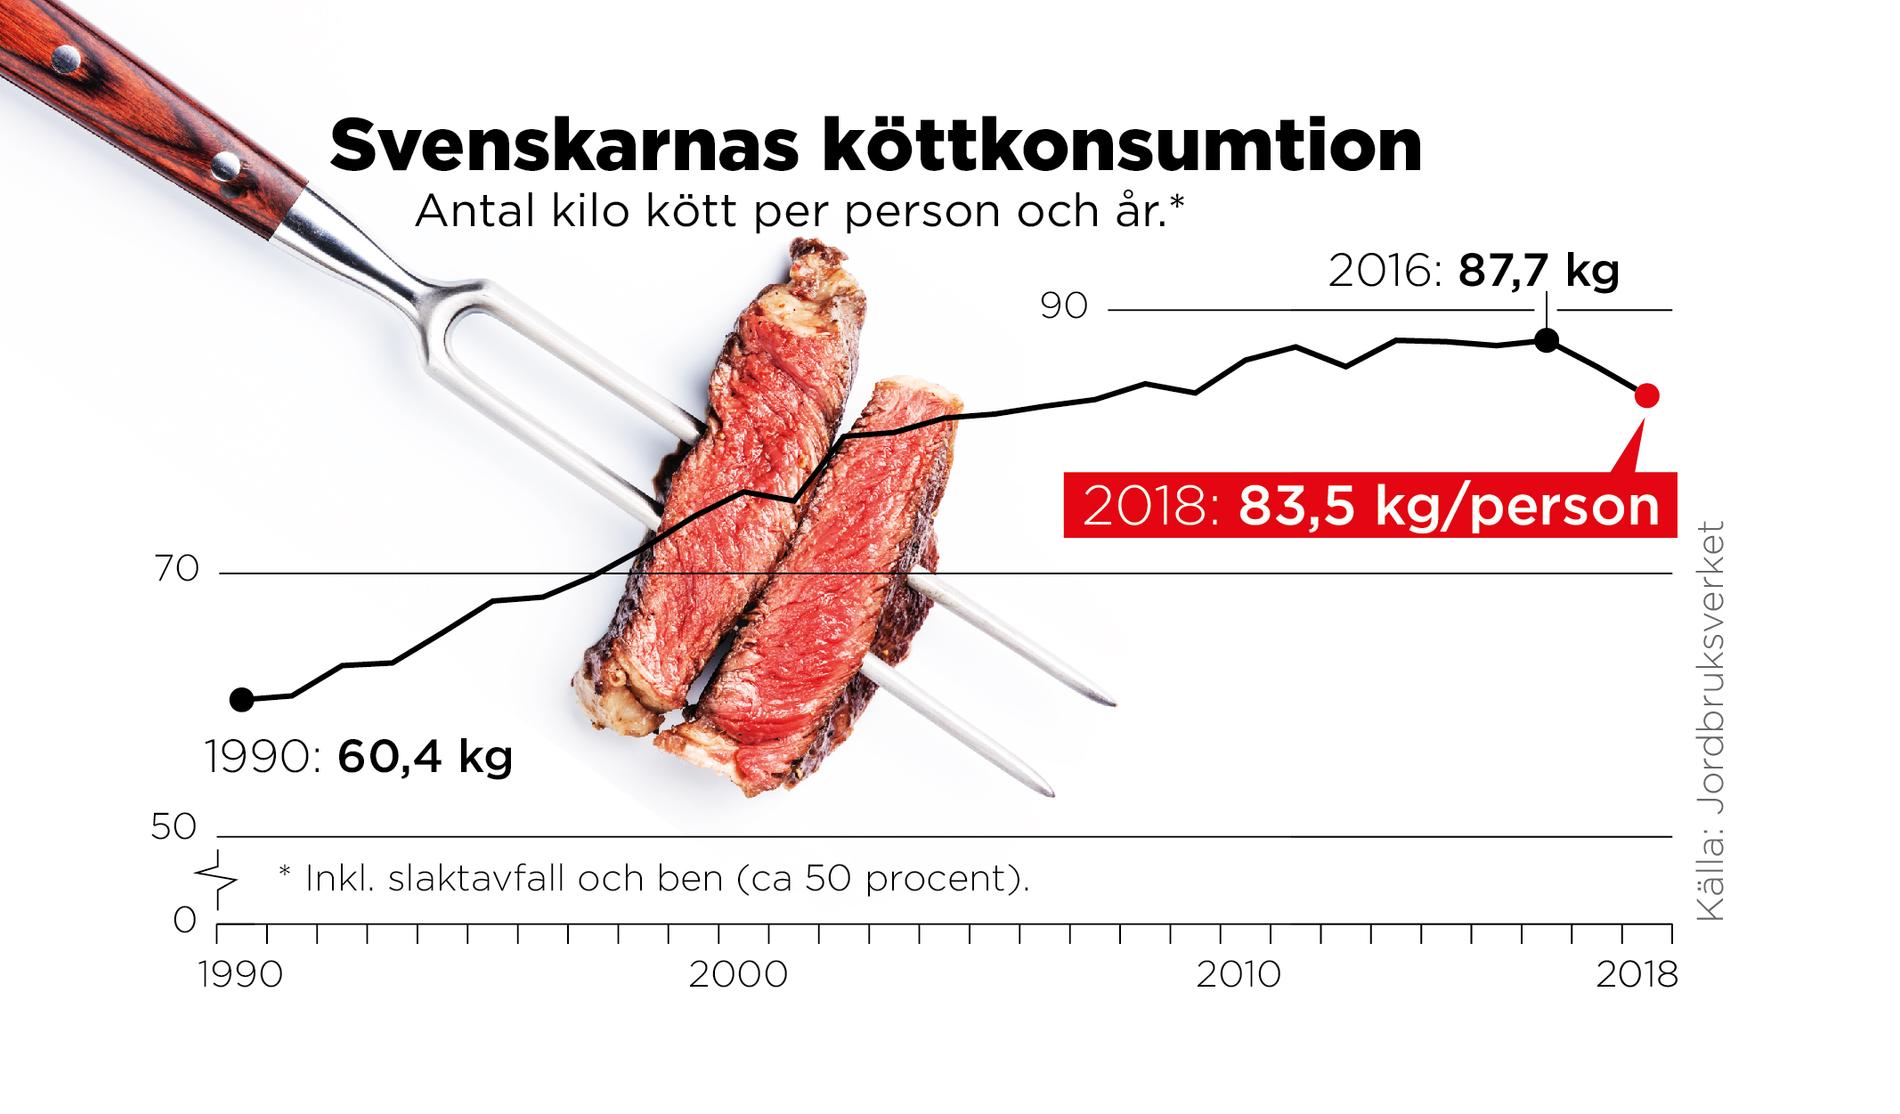 2018 var vår konsumtion 83,5 kilo, framför allt har konsumtionen av nötköttet och fågelköttet ökat, till knappt 25 respektive 22 kilo.